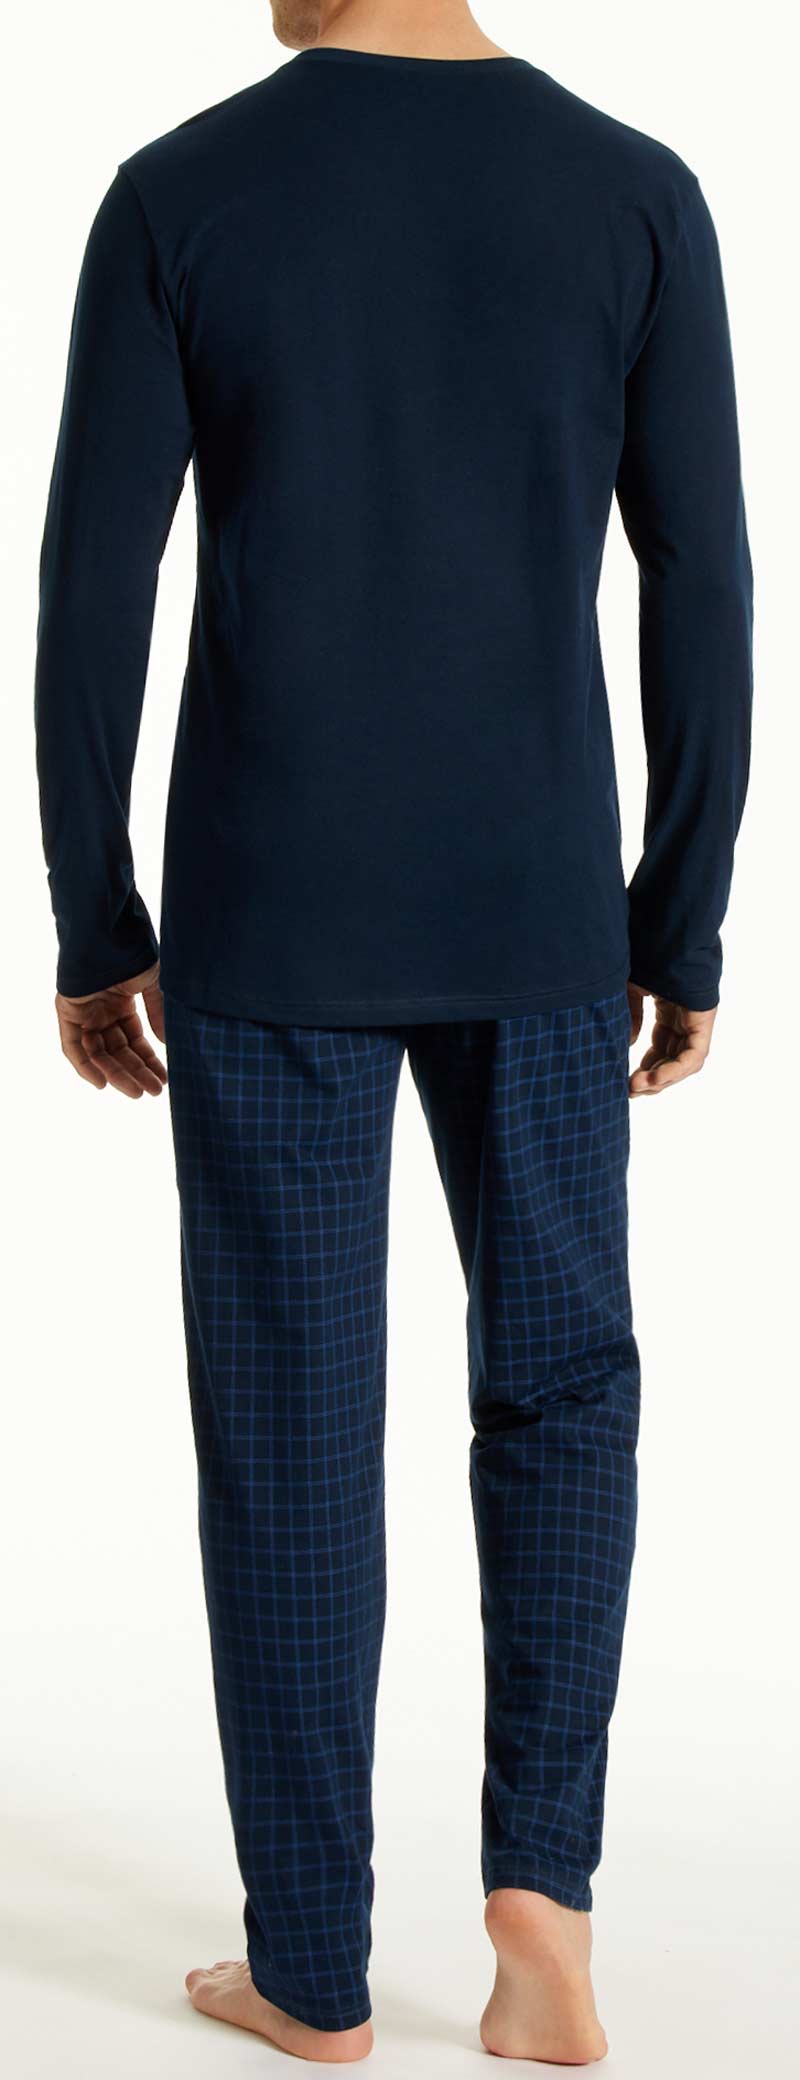 Schiesser Uncover pyjama achterkant blauw